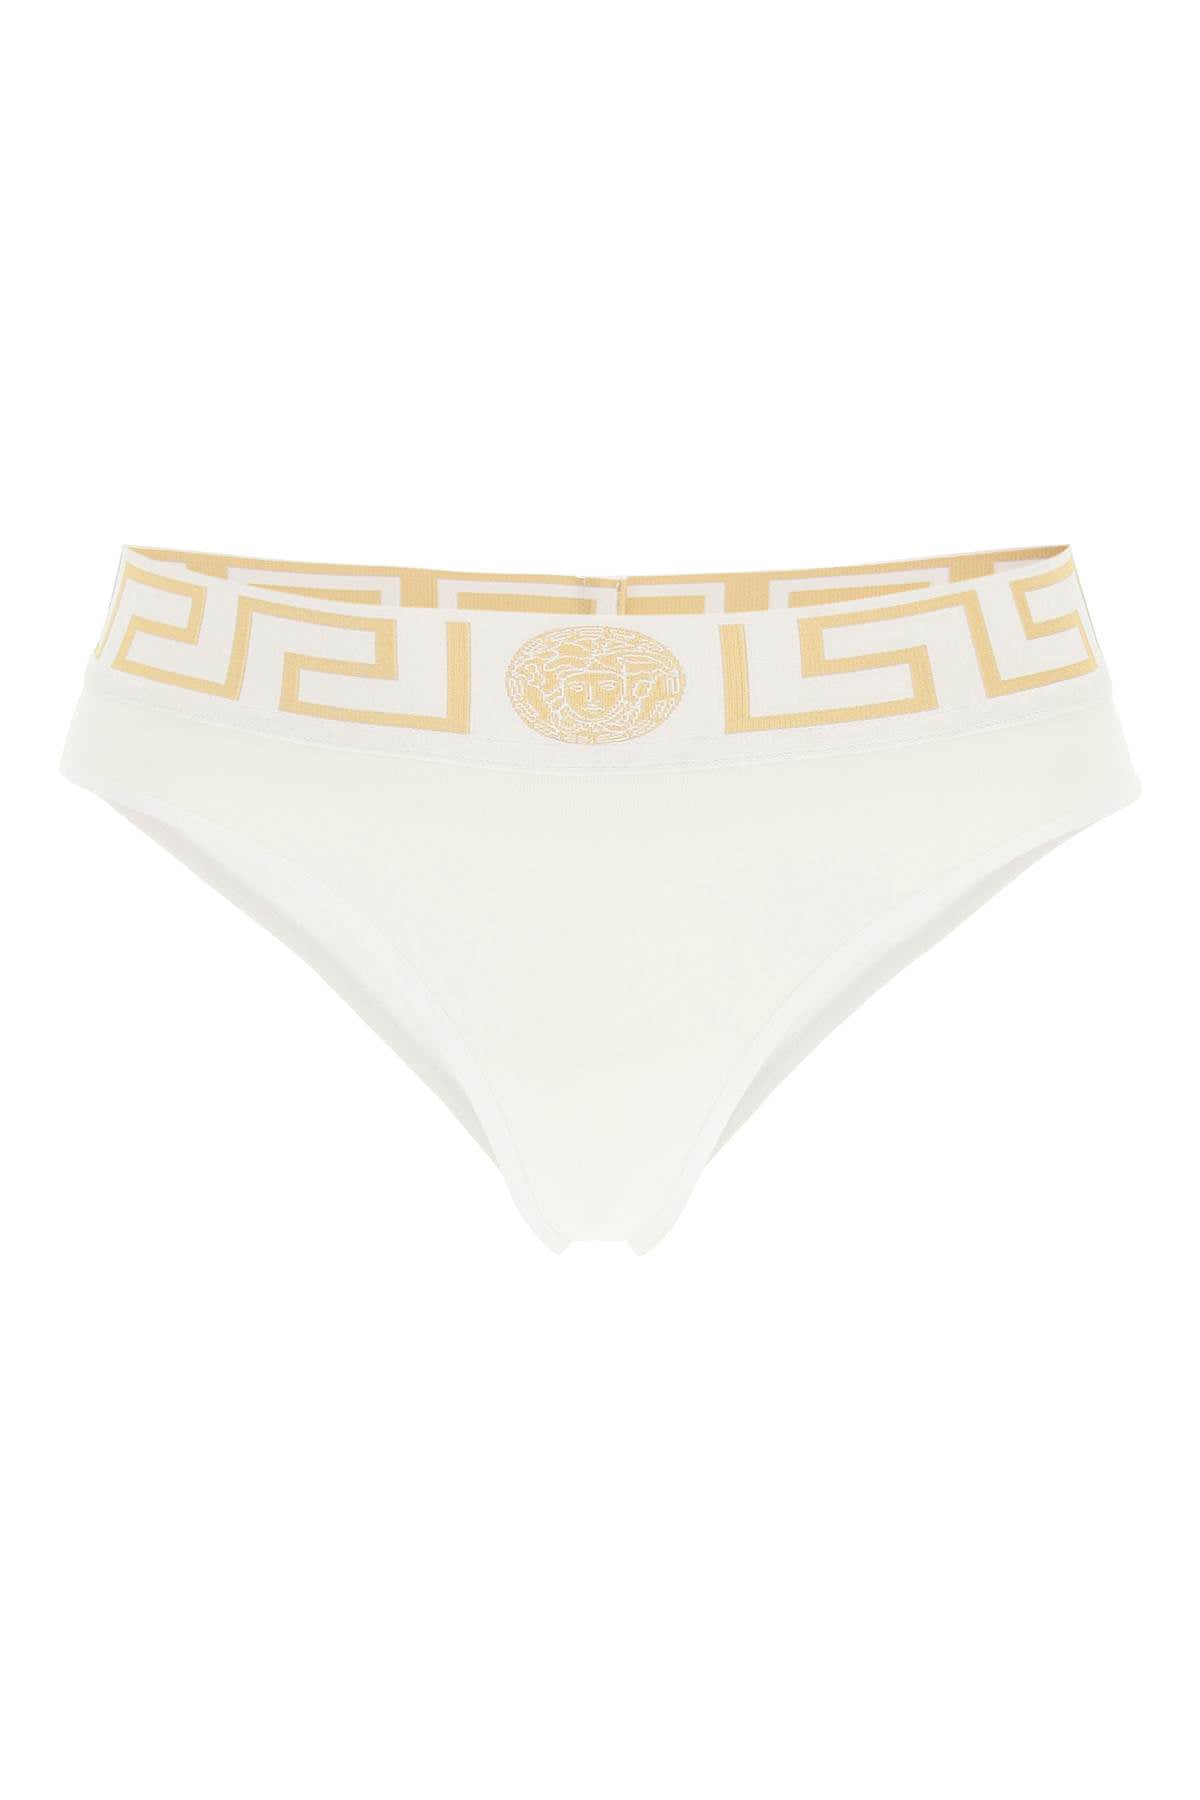 Versace Greca Underwear Bra